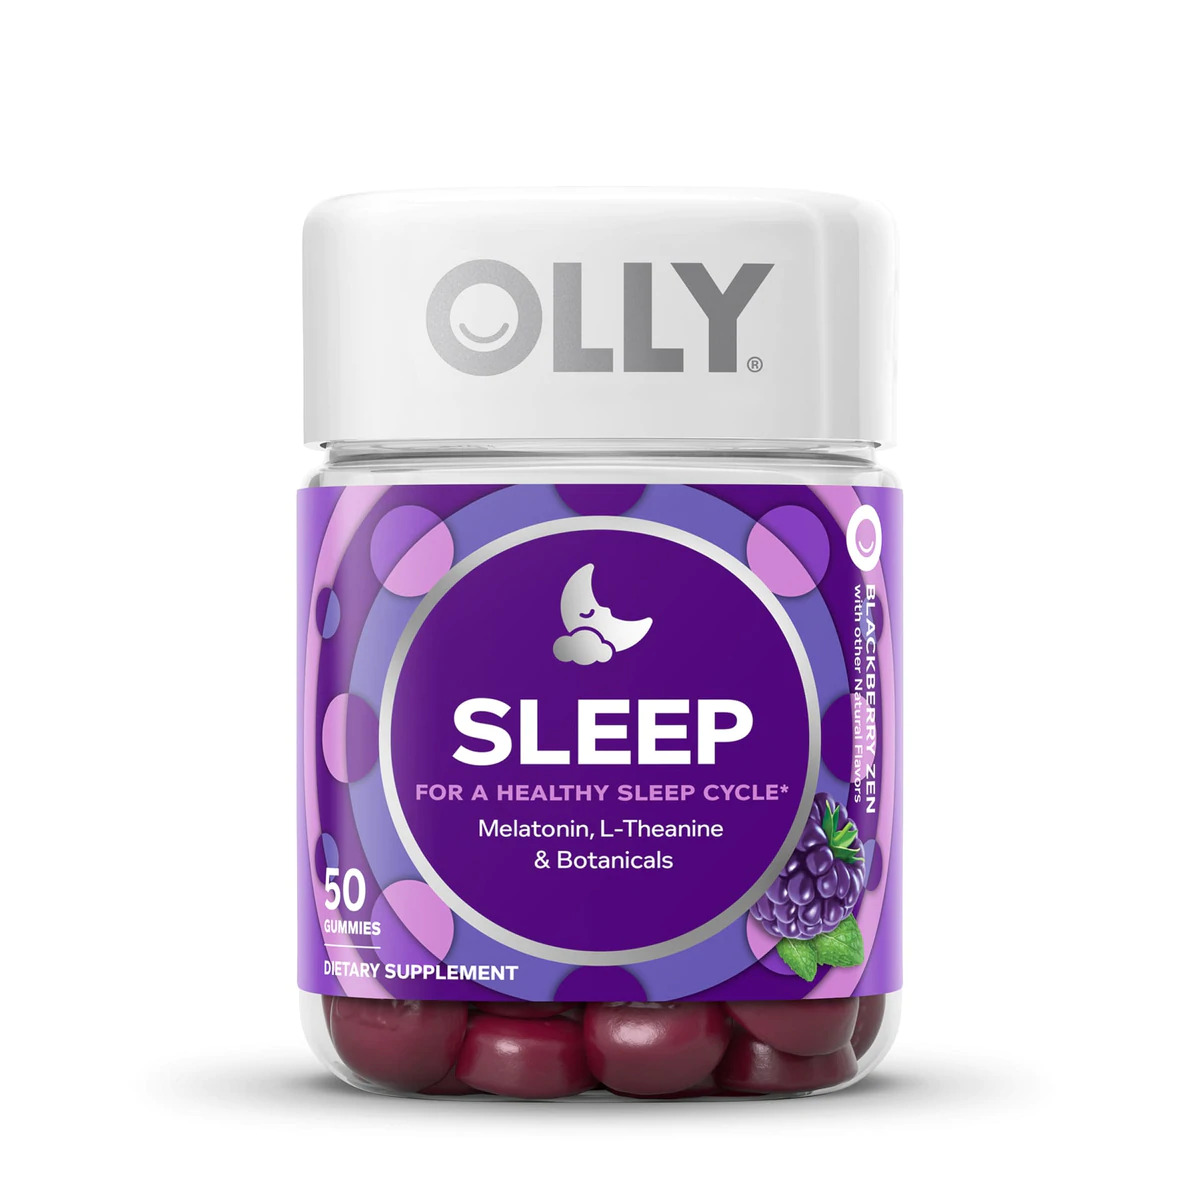 OLLY Sleep gummies